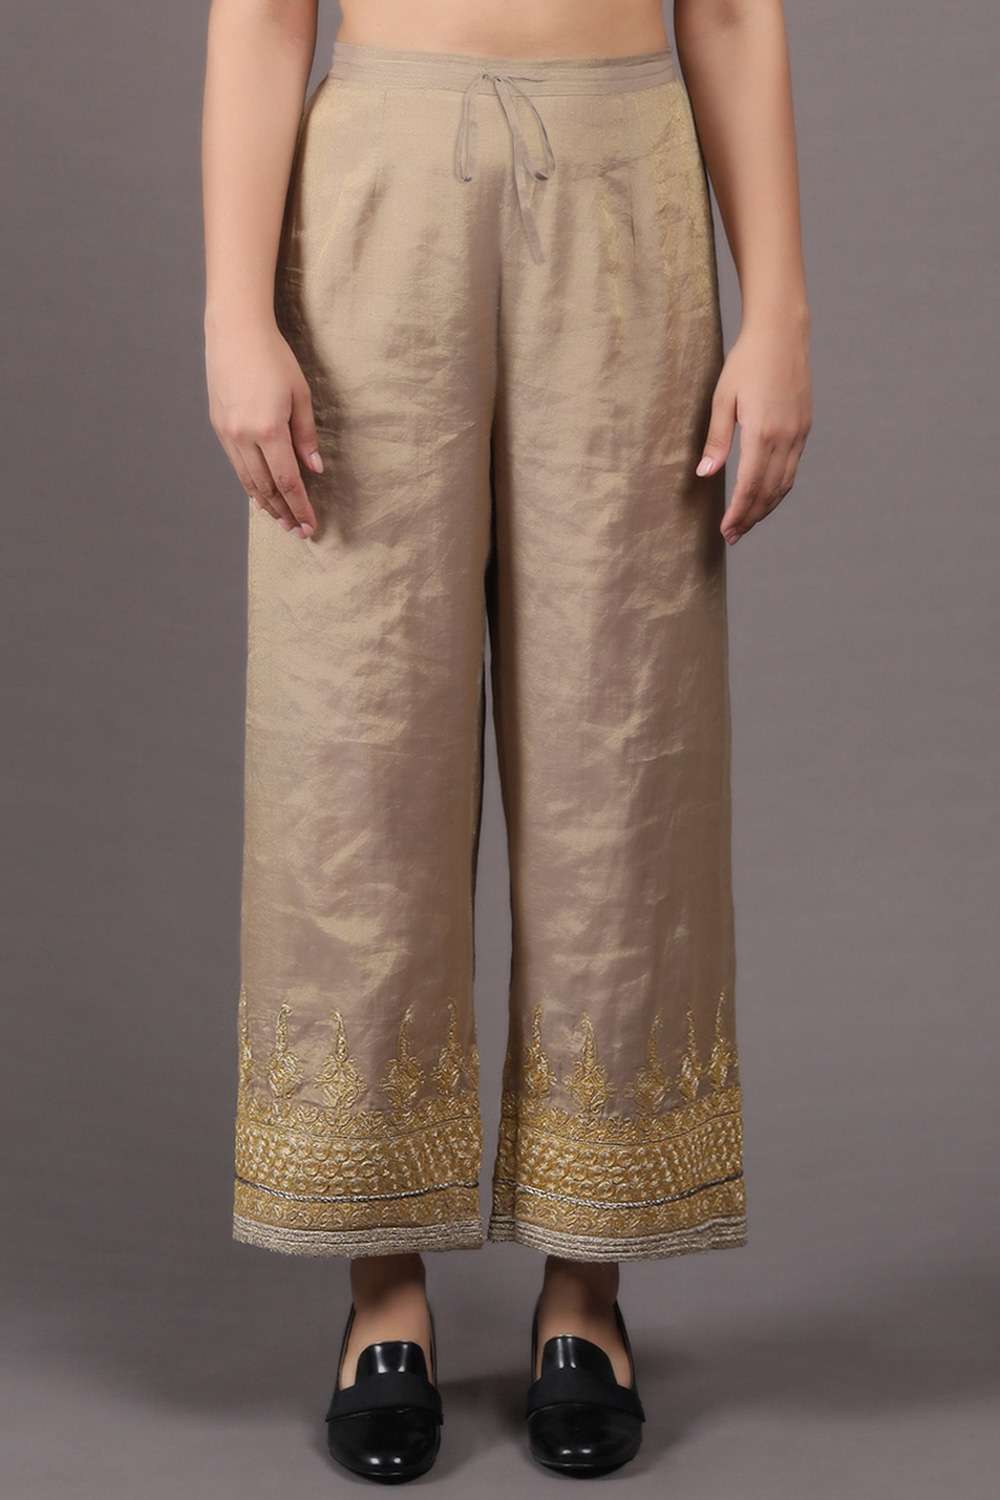 Buy Black Cotton Flex Embellished Hakoba Pants Online in India